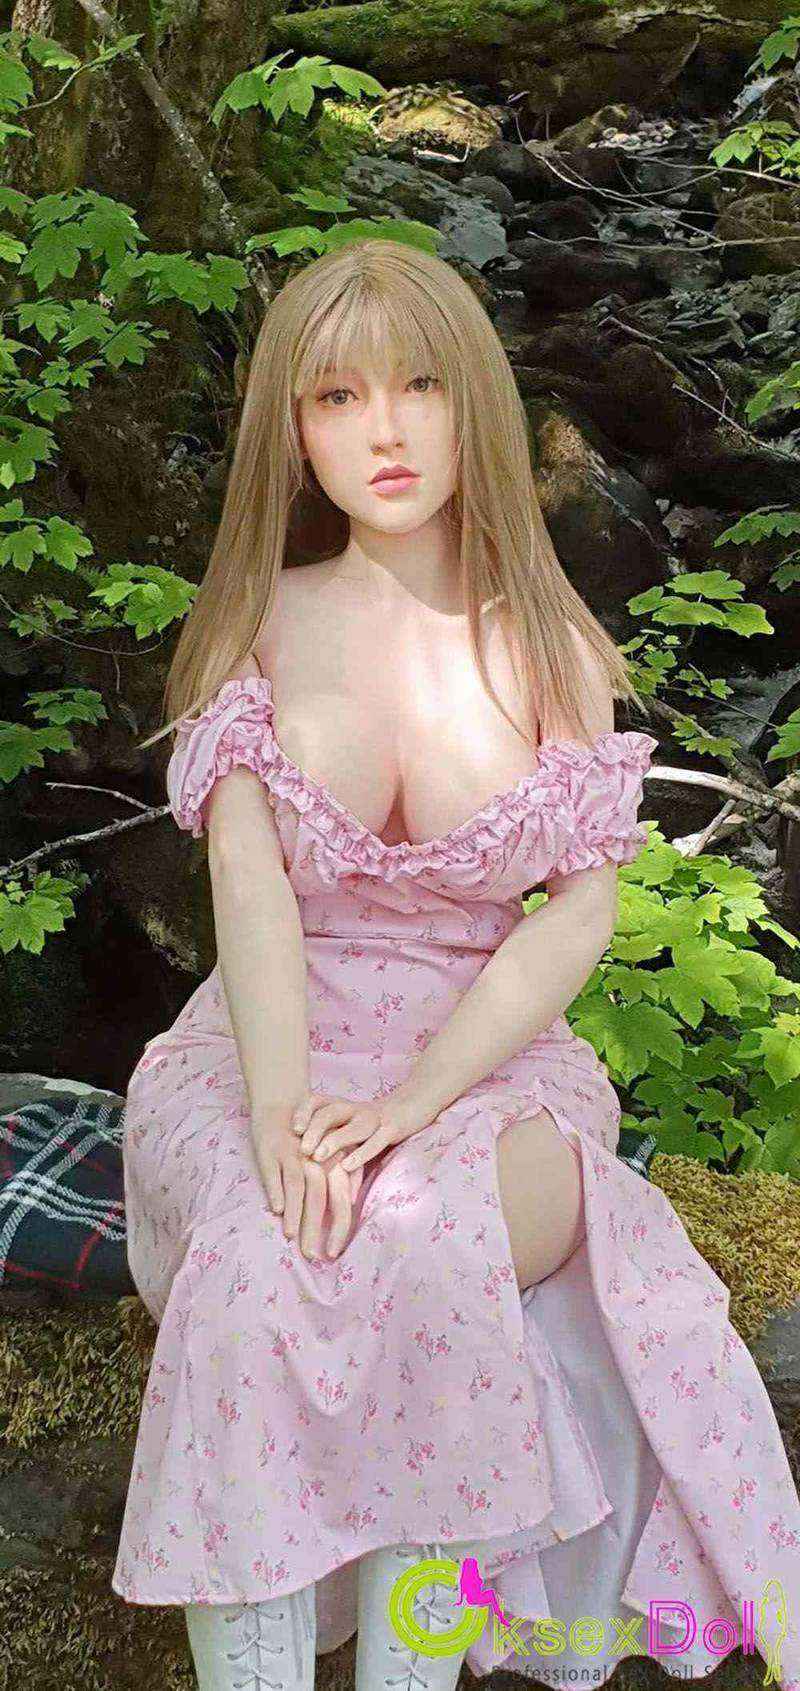 165cm Sex doll images